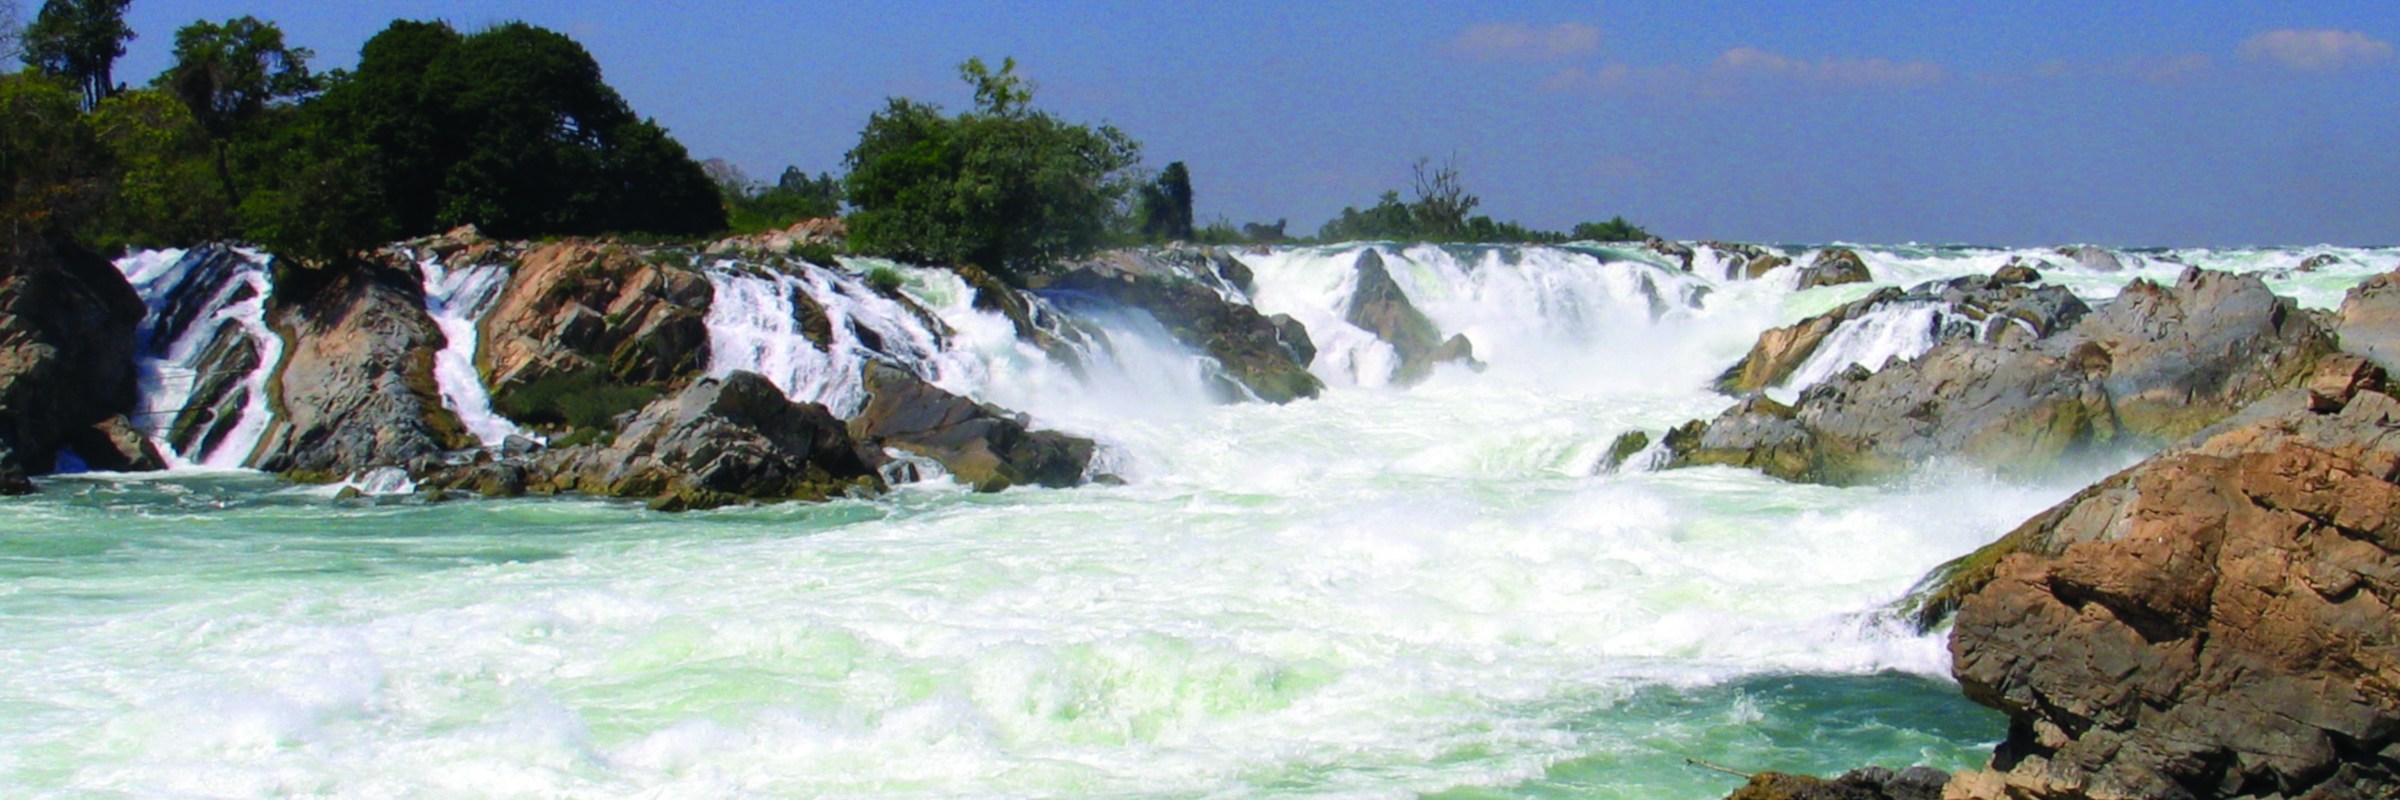 Die Mekongfälle liegen in der Provinz Champasak. Der kaskadenartige Wasserfall liegt an der Grenze zu Kambodscha.